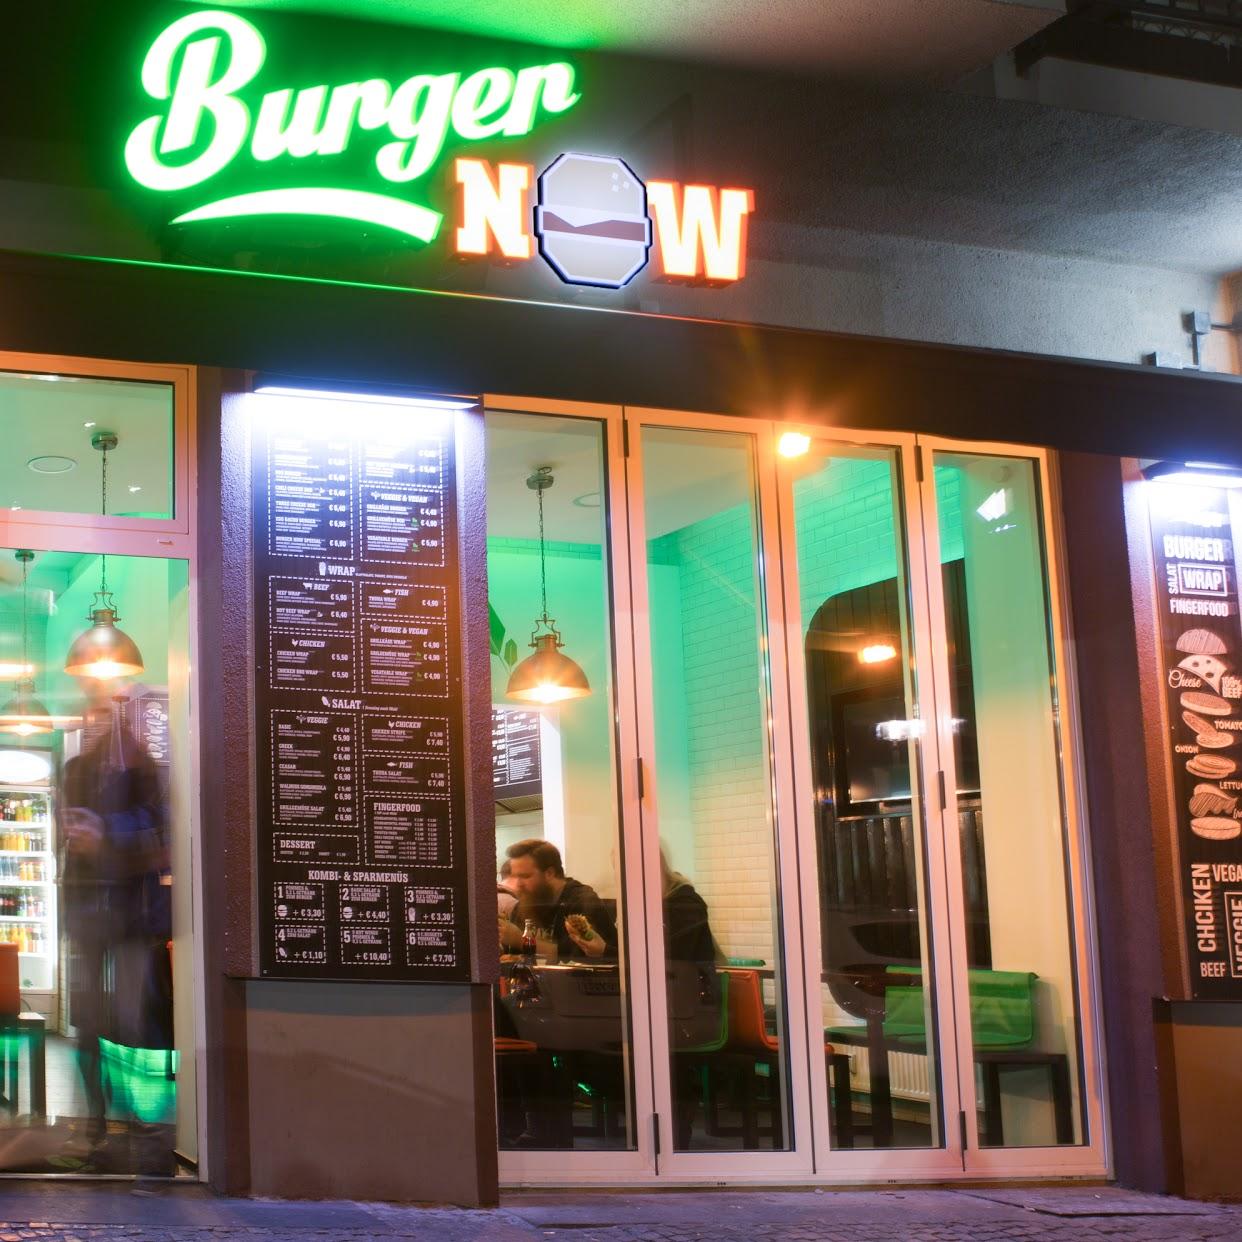 Restaurant "Burger Now" in Berlin